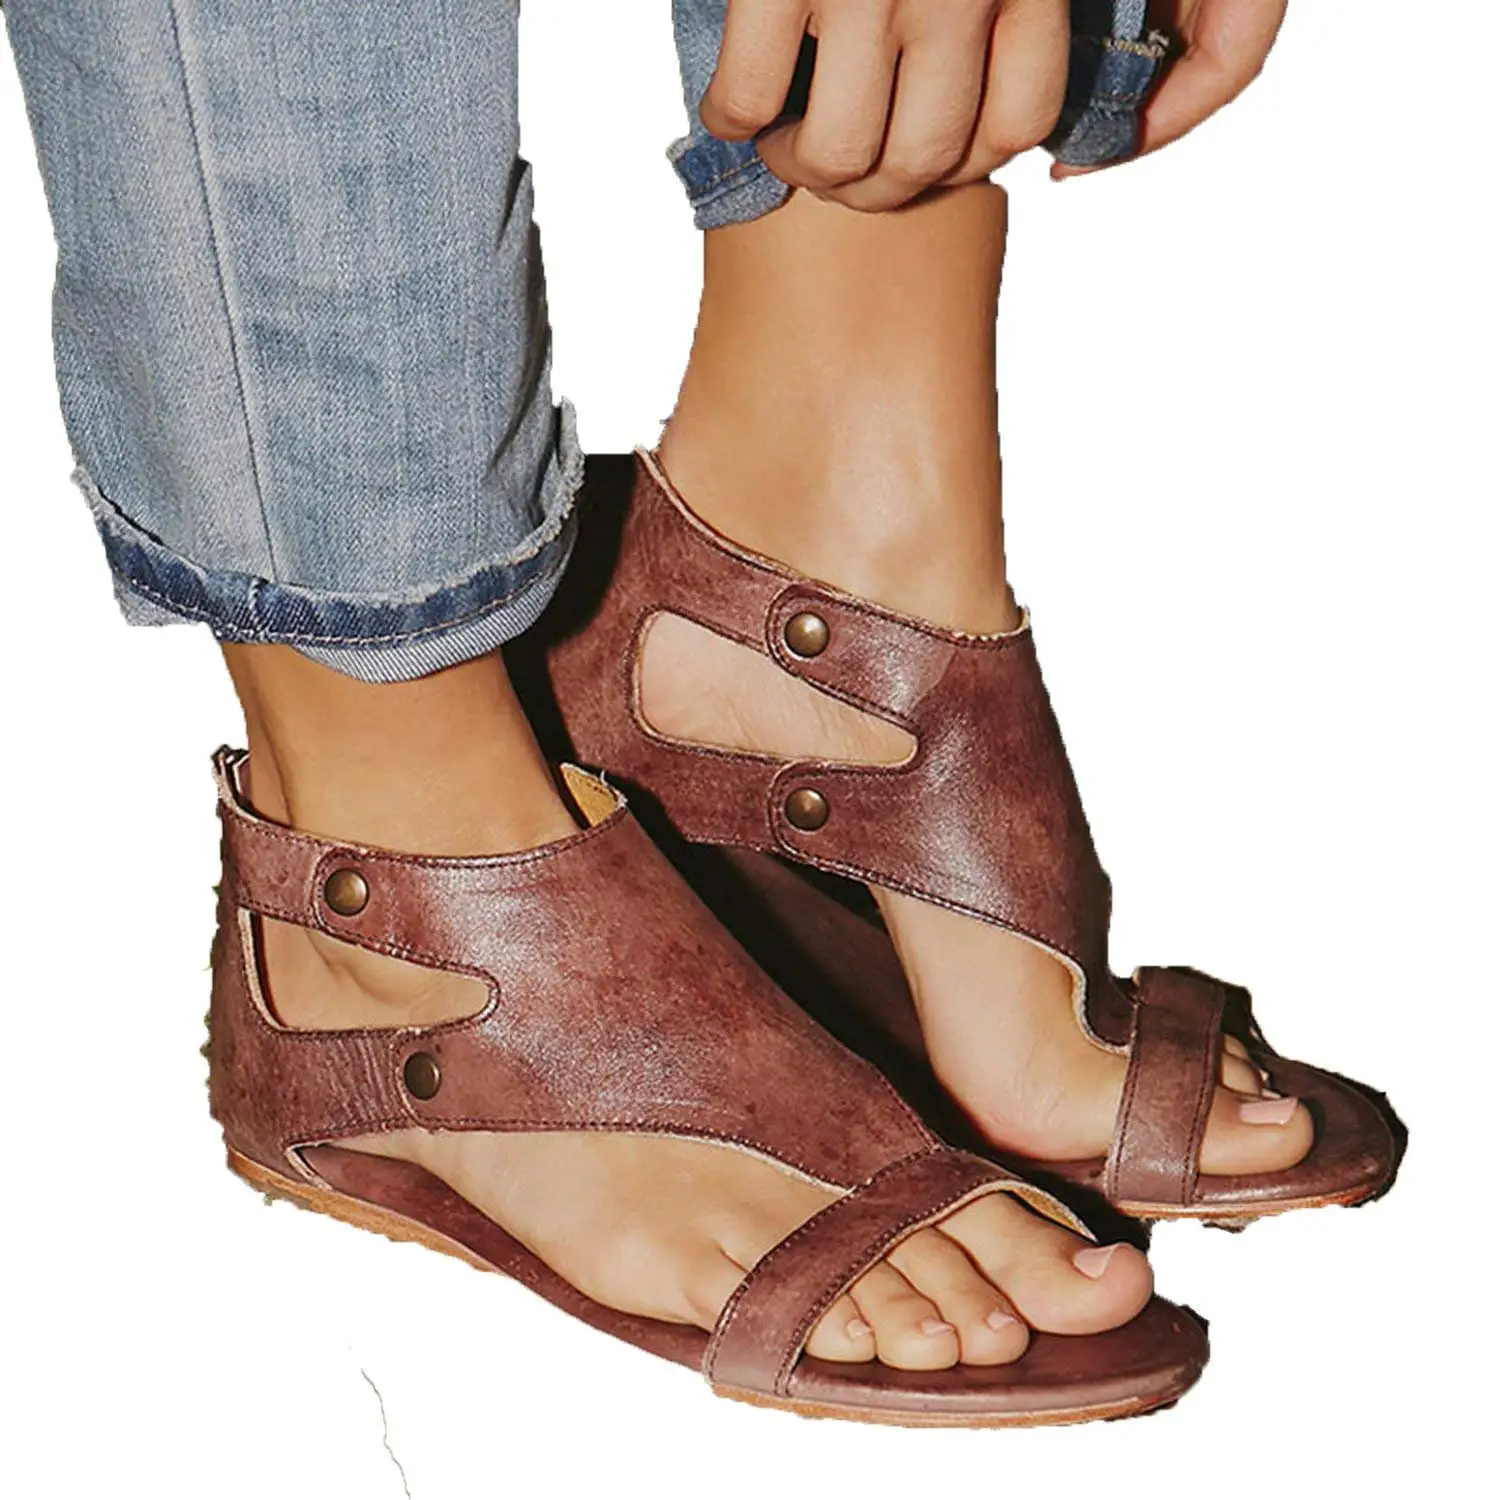 cheap womens sandals size 10